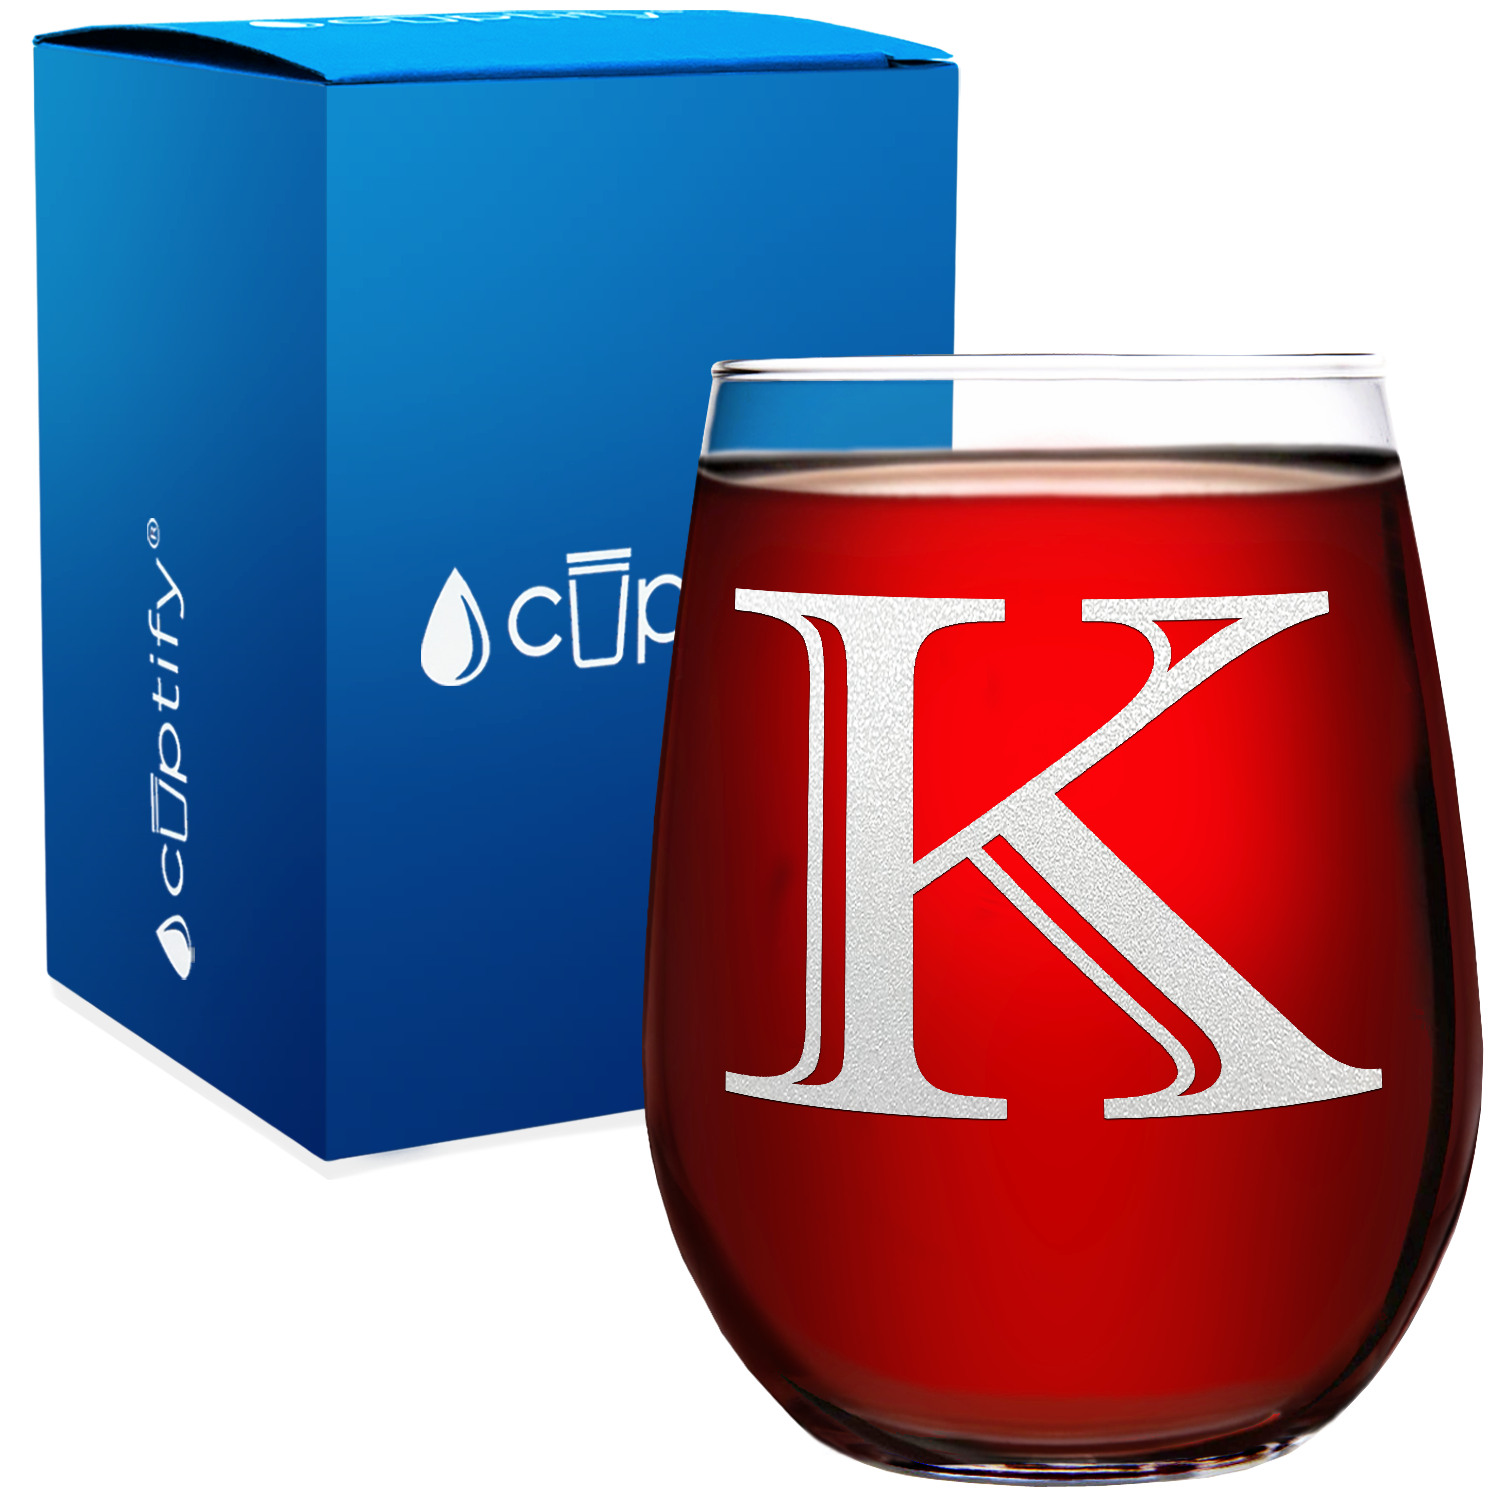 Monogram Initial Letter K 17oz Stemless Wine Glass